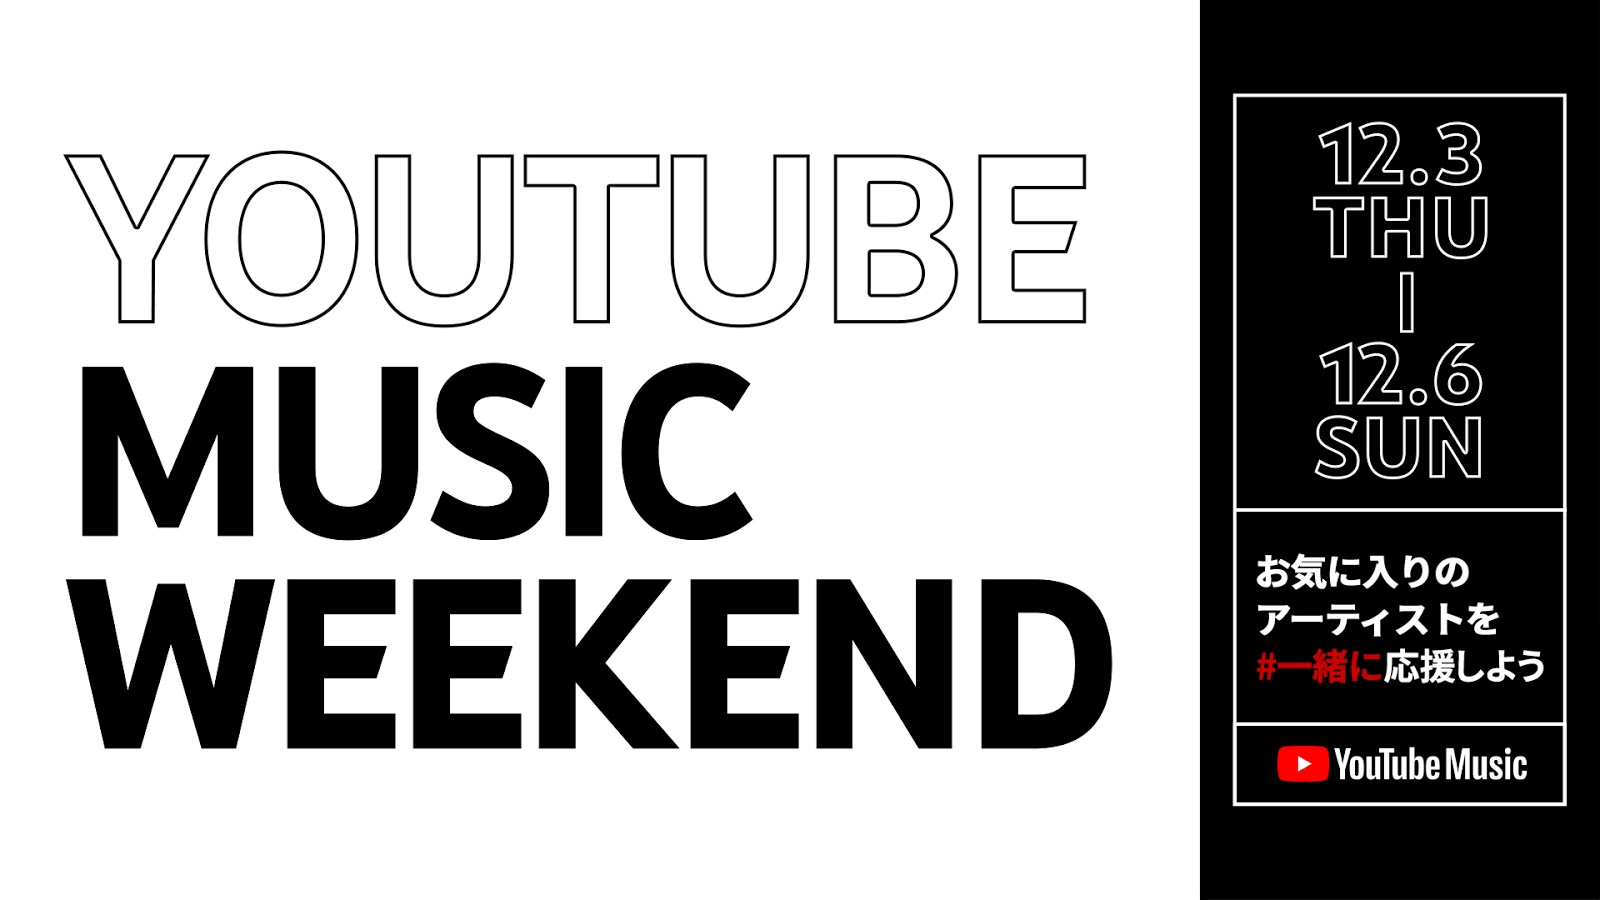 YouTube Music Weekend